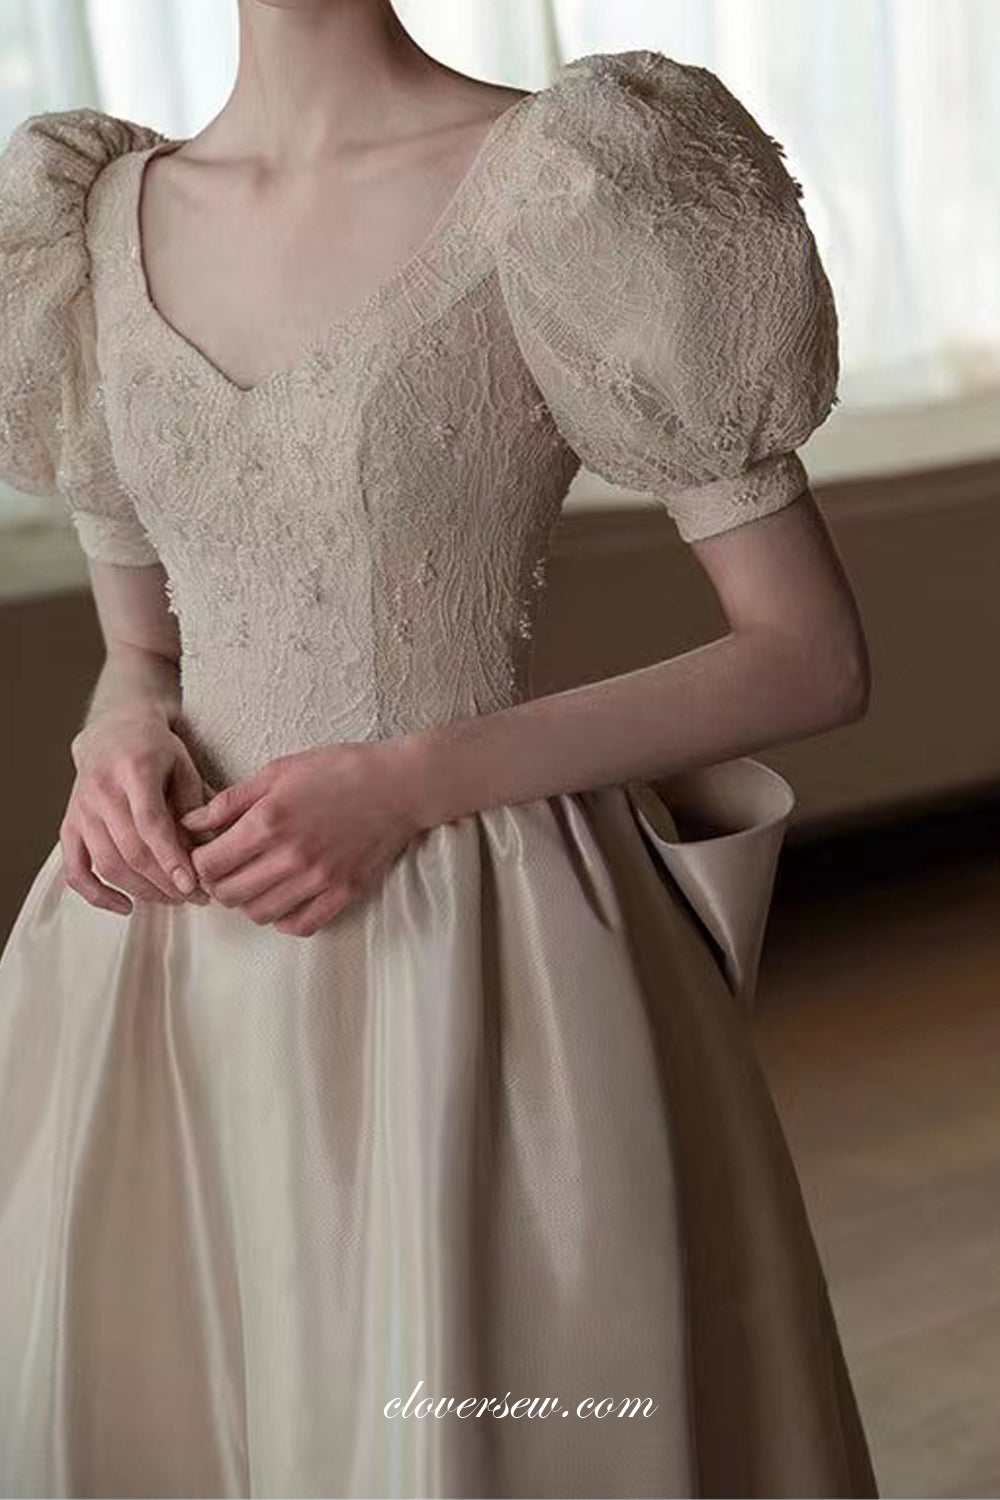 Beaded Lace Satin Short Sleeves Ivory Elegant Wedding Dresses, CW0325